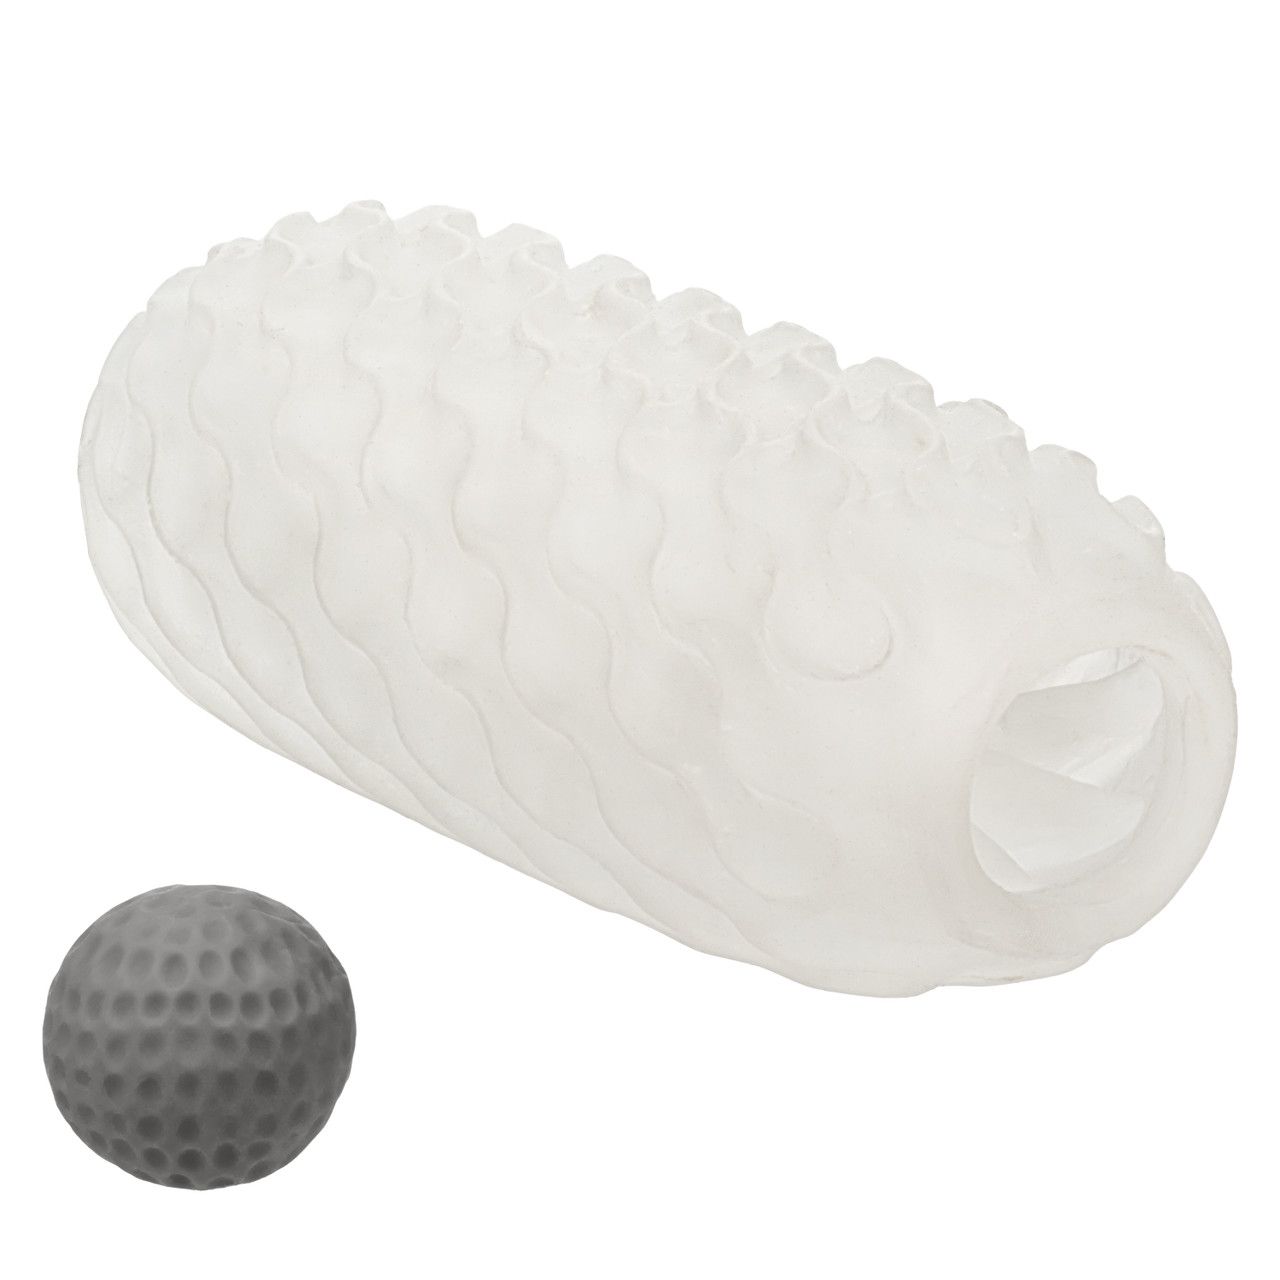 Мастурбатор Reversible Squishy Ball Stroker - это двухсторонний мастурбатор закрытого типа, рельеф которого можно менять в зависимости от стороны игрушки. Кроме того, внутри мастурбатора есть мягкий шарик с необычной текстурой для дополнительной стимуляции головки члена.